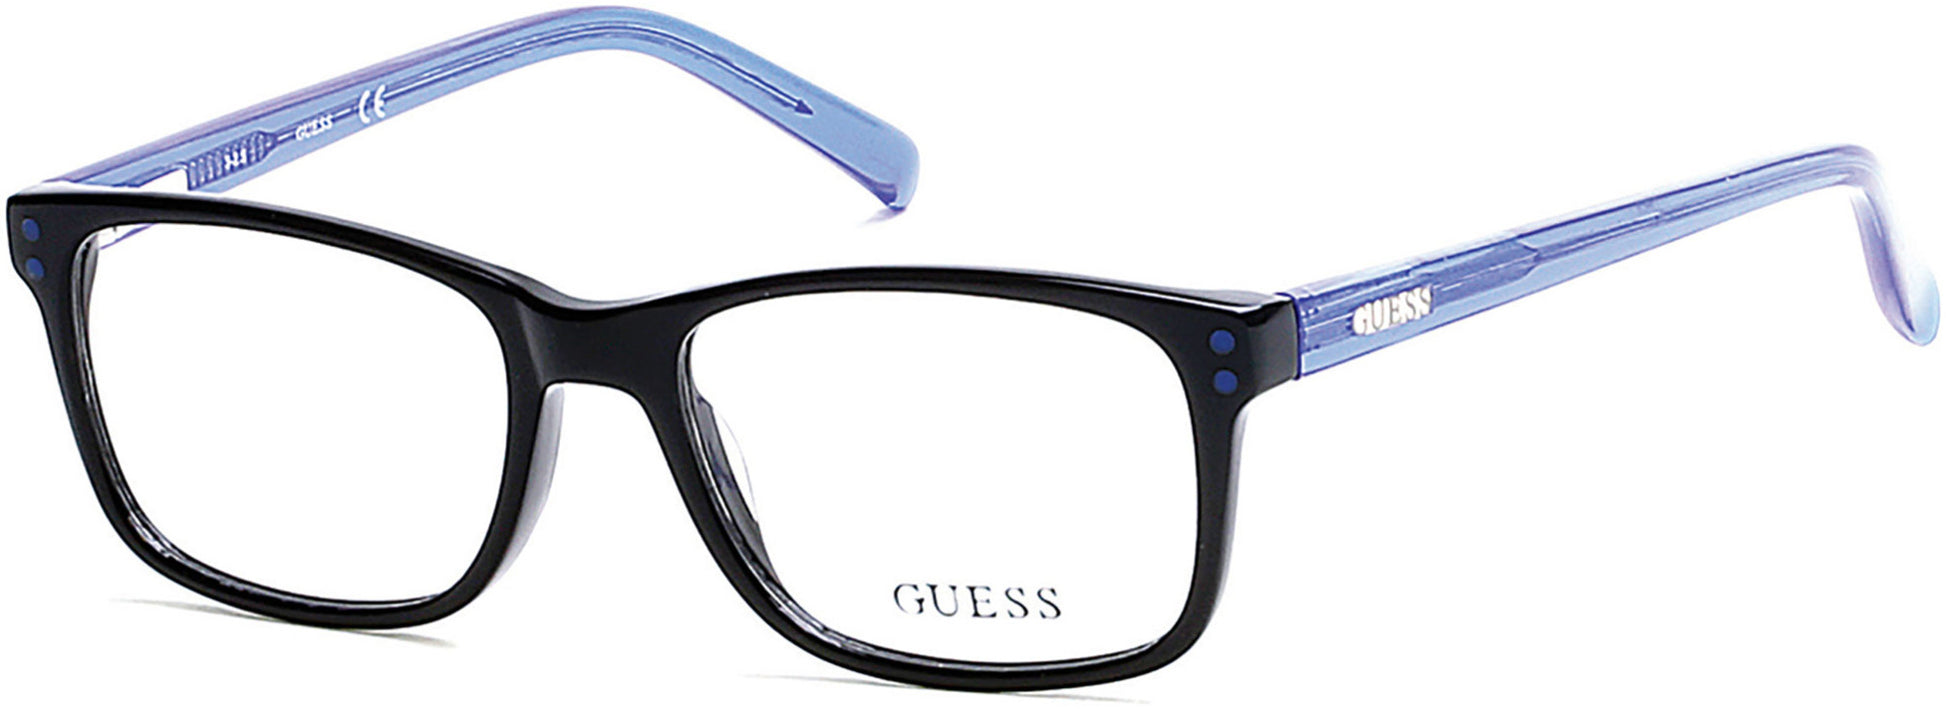 Guess GU9161 Geometric Eyeglasses 001-001 - Shiny Black